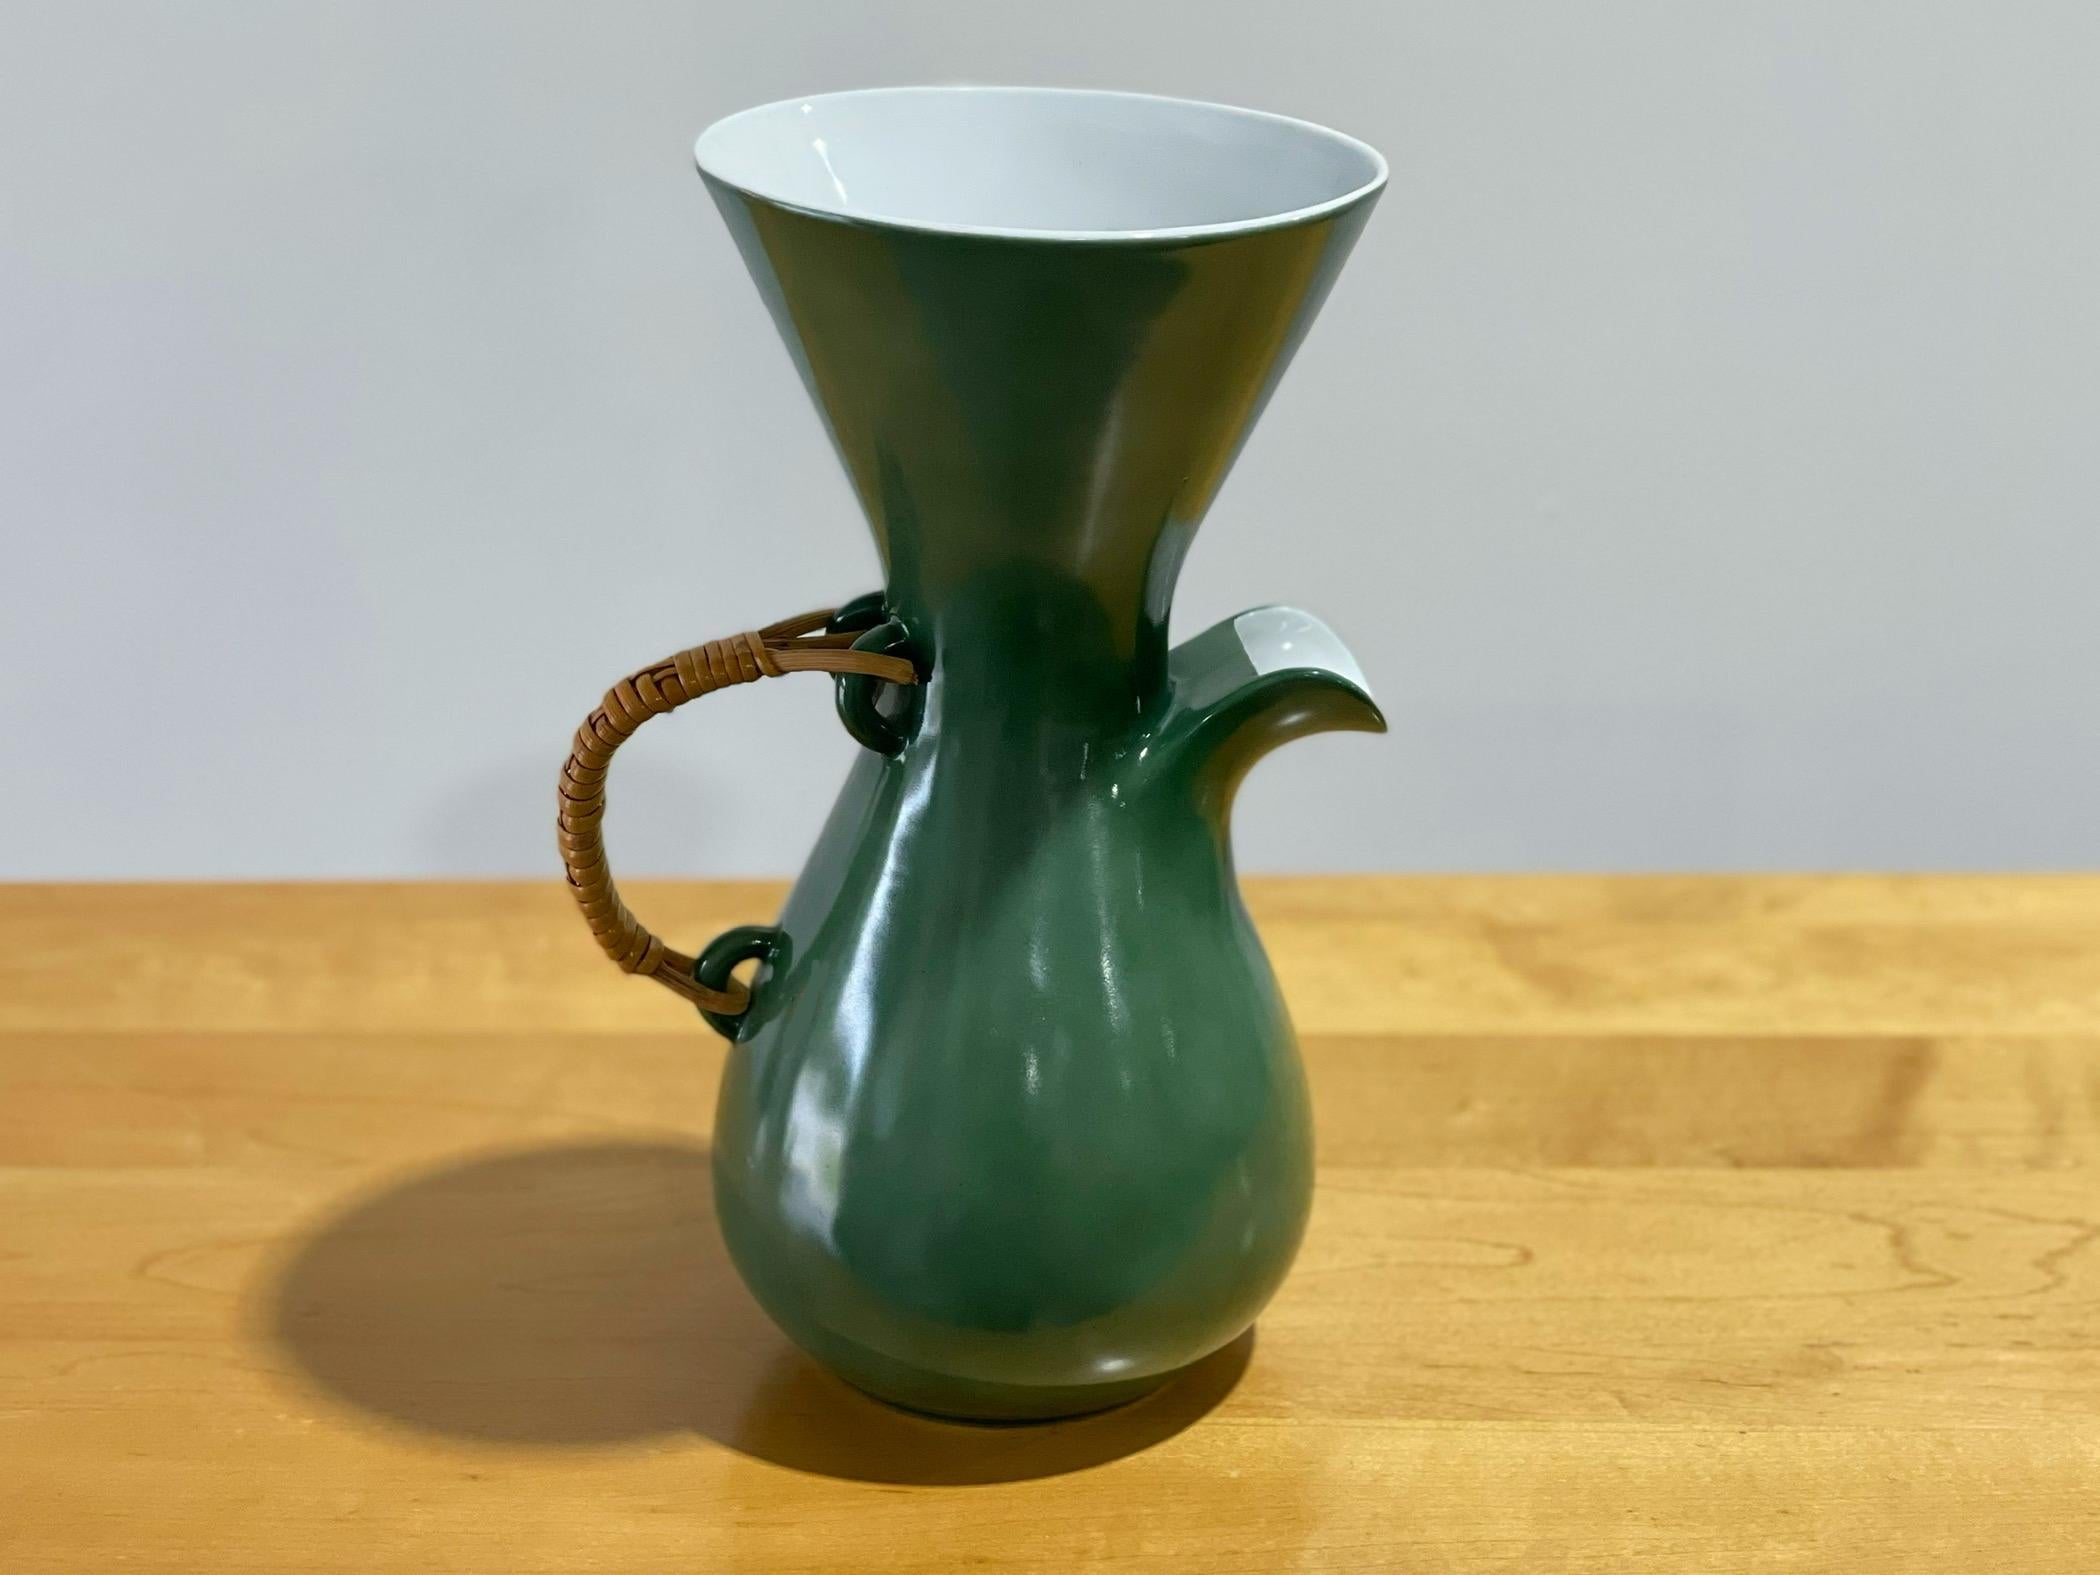 Exquise carafe à café moderniste conçue par Kenji Fujita pour Freeman Lederman. Pichet à boisson en glaçure verte rare avec intérieur blanc brillant. Marqué du logo FL. 
Excellent état - aucun problème à signaler
Il sera emballé professionnellement,